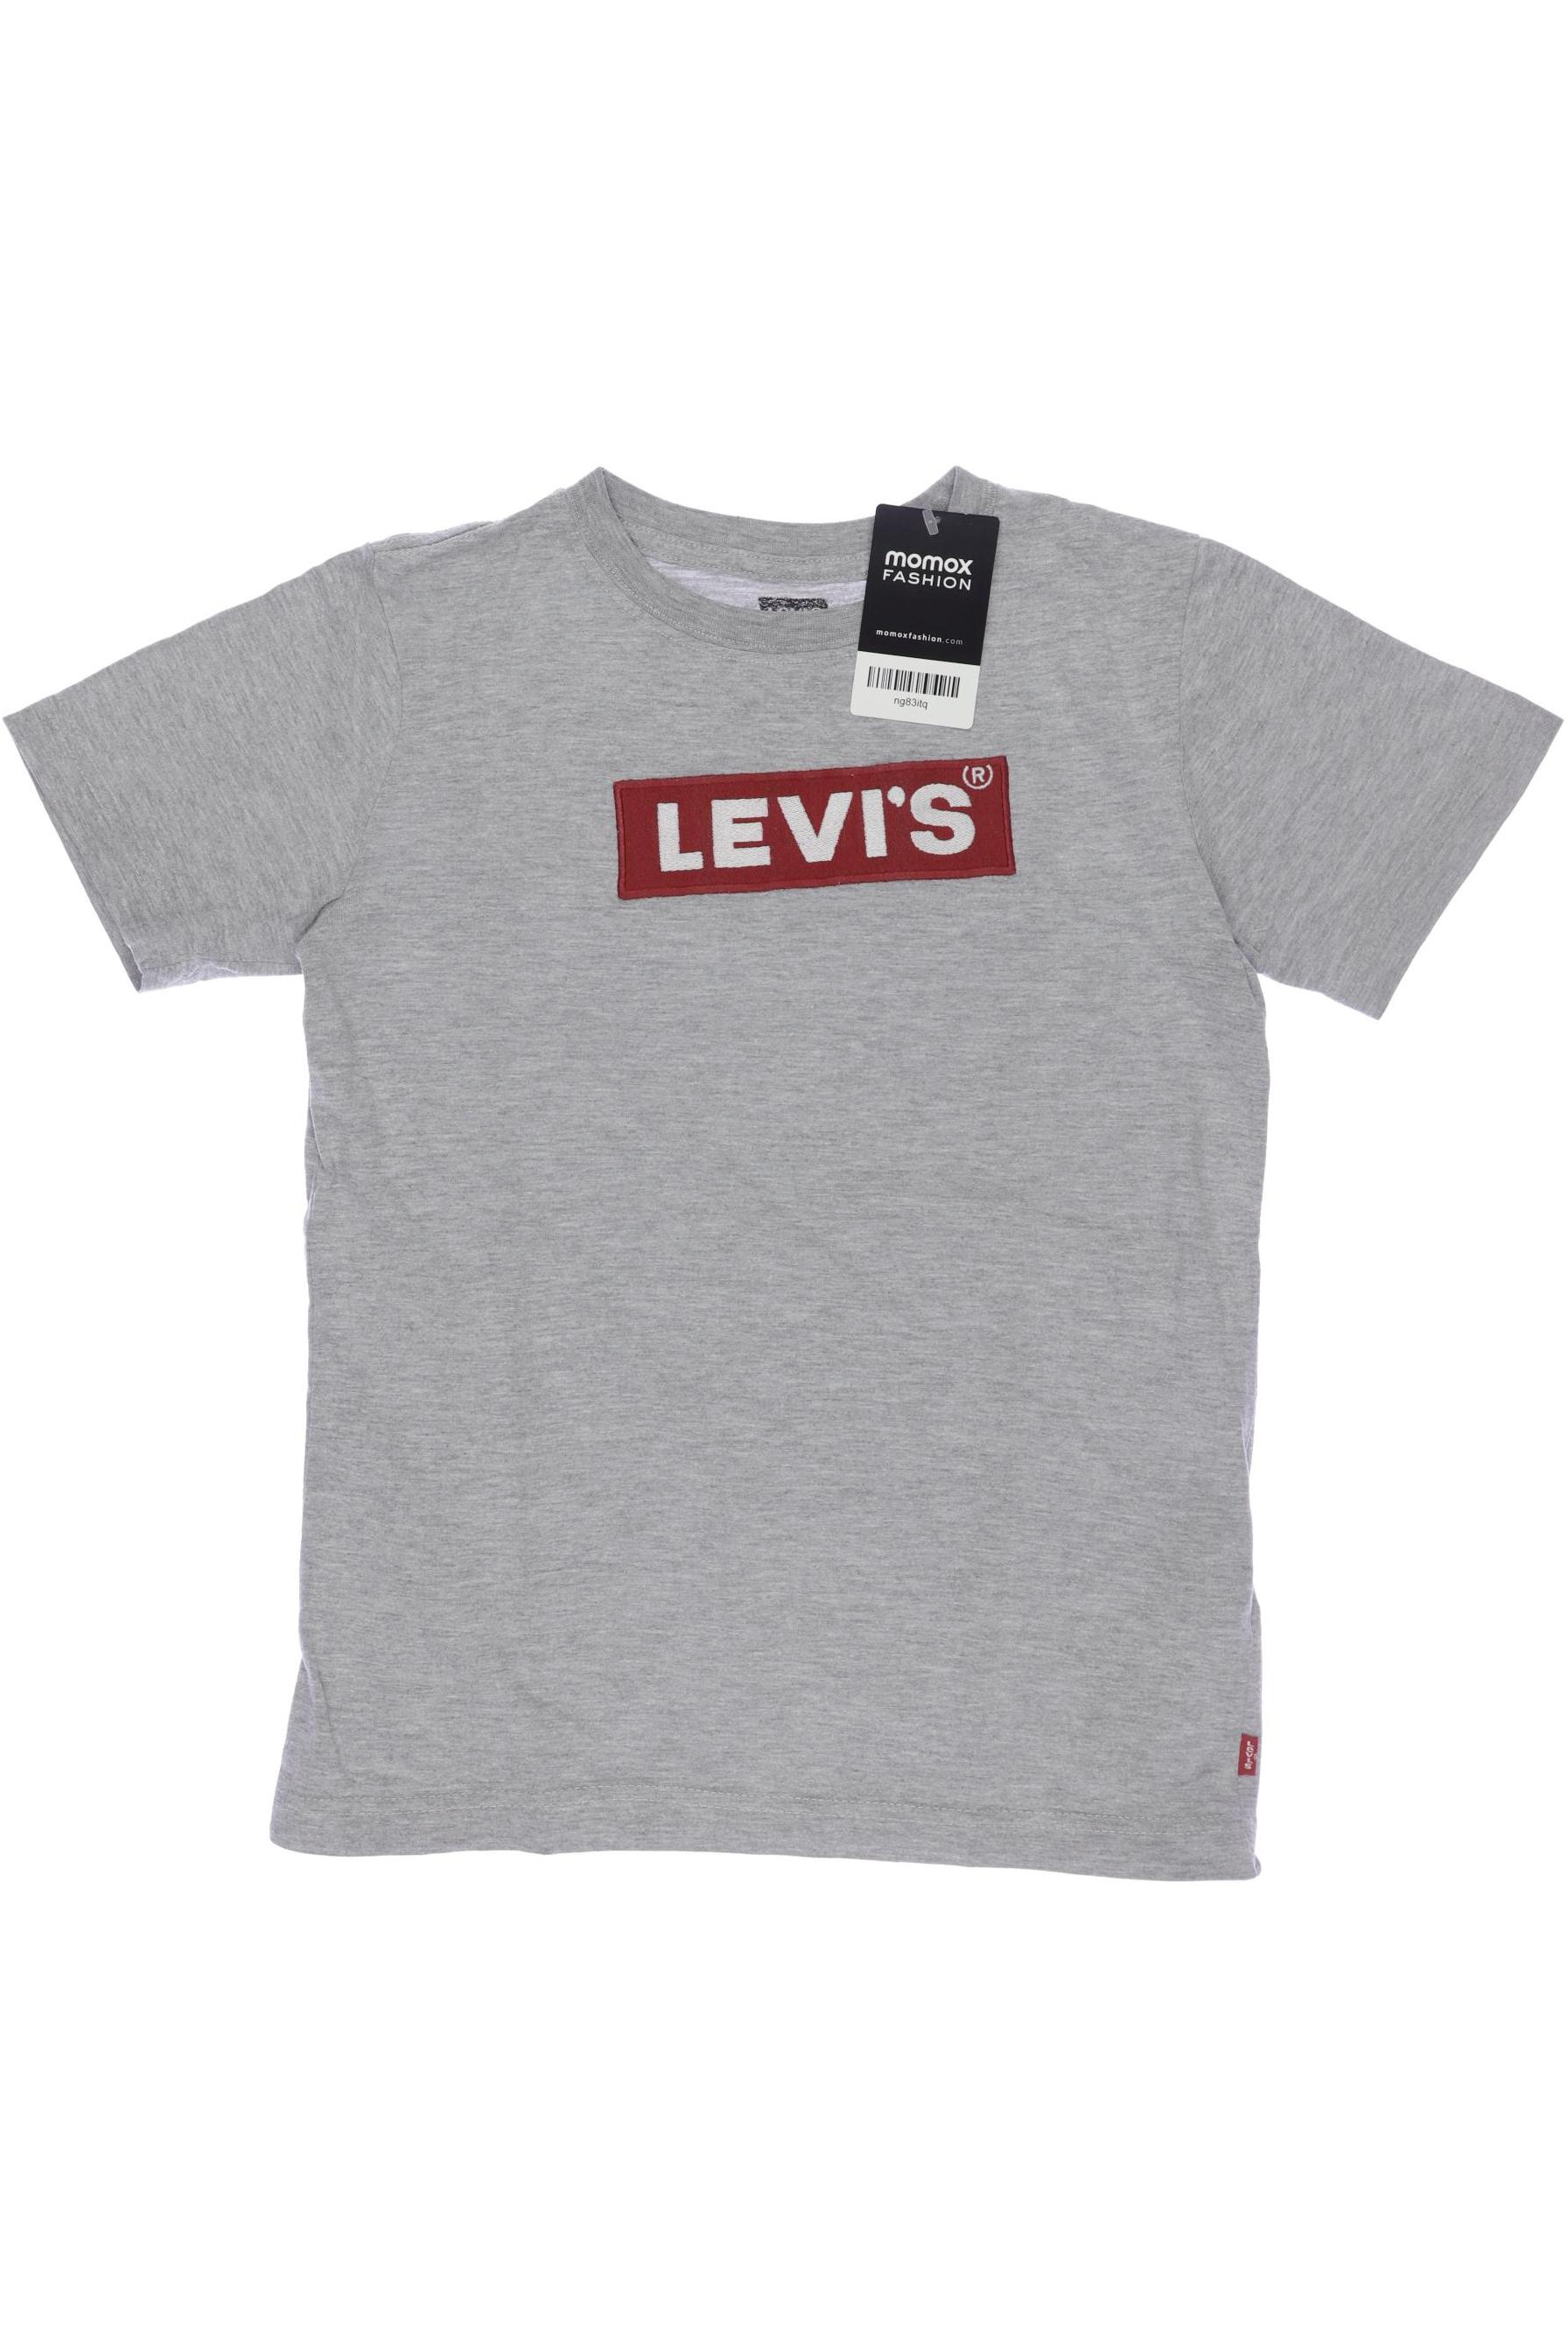 Levis Herren T-Shirt, grau, Gr. 140 von Levis